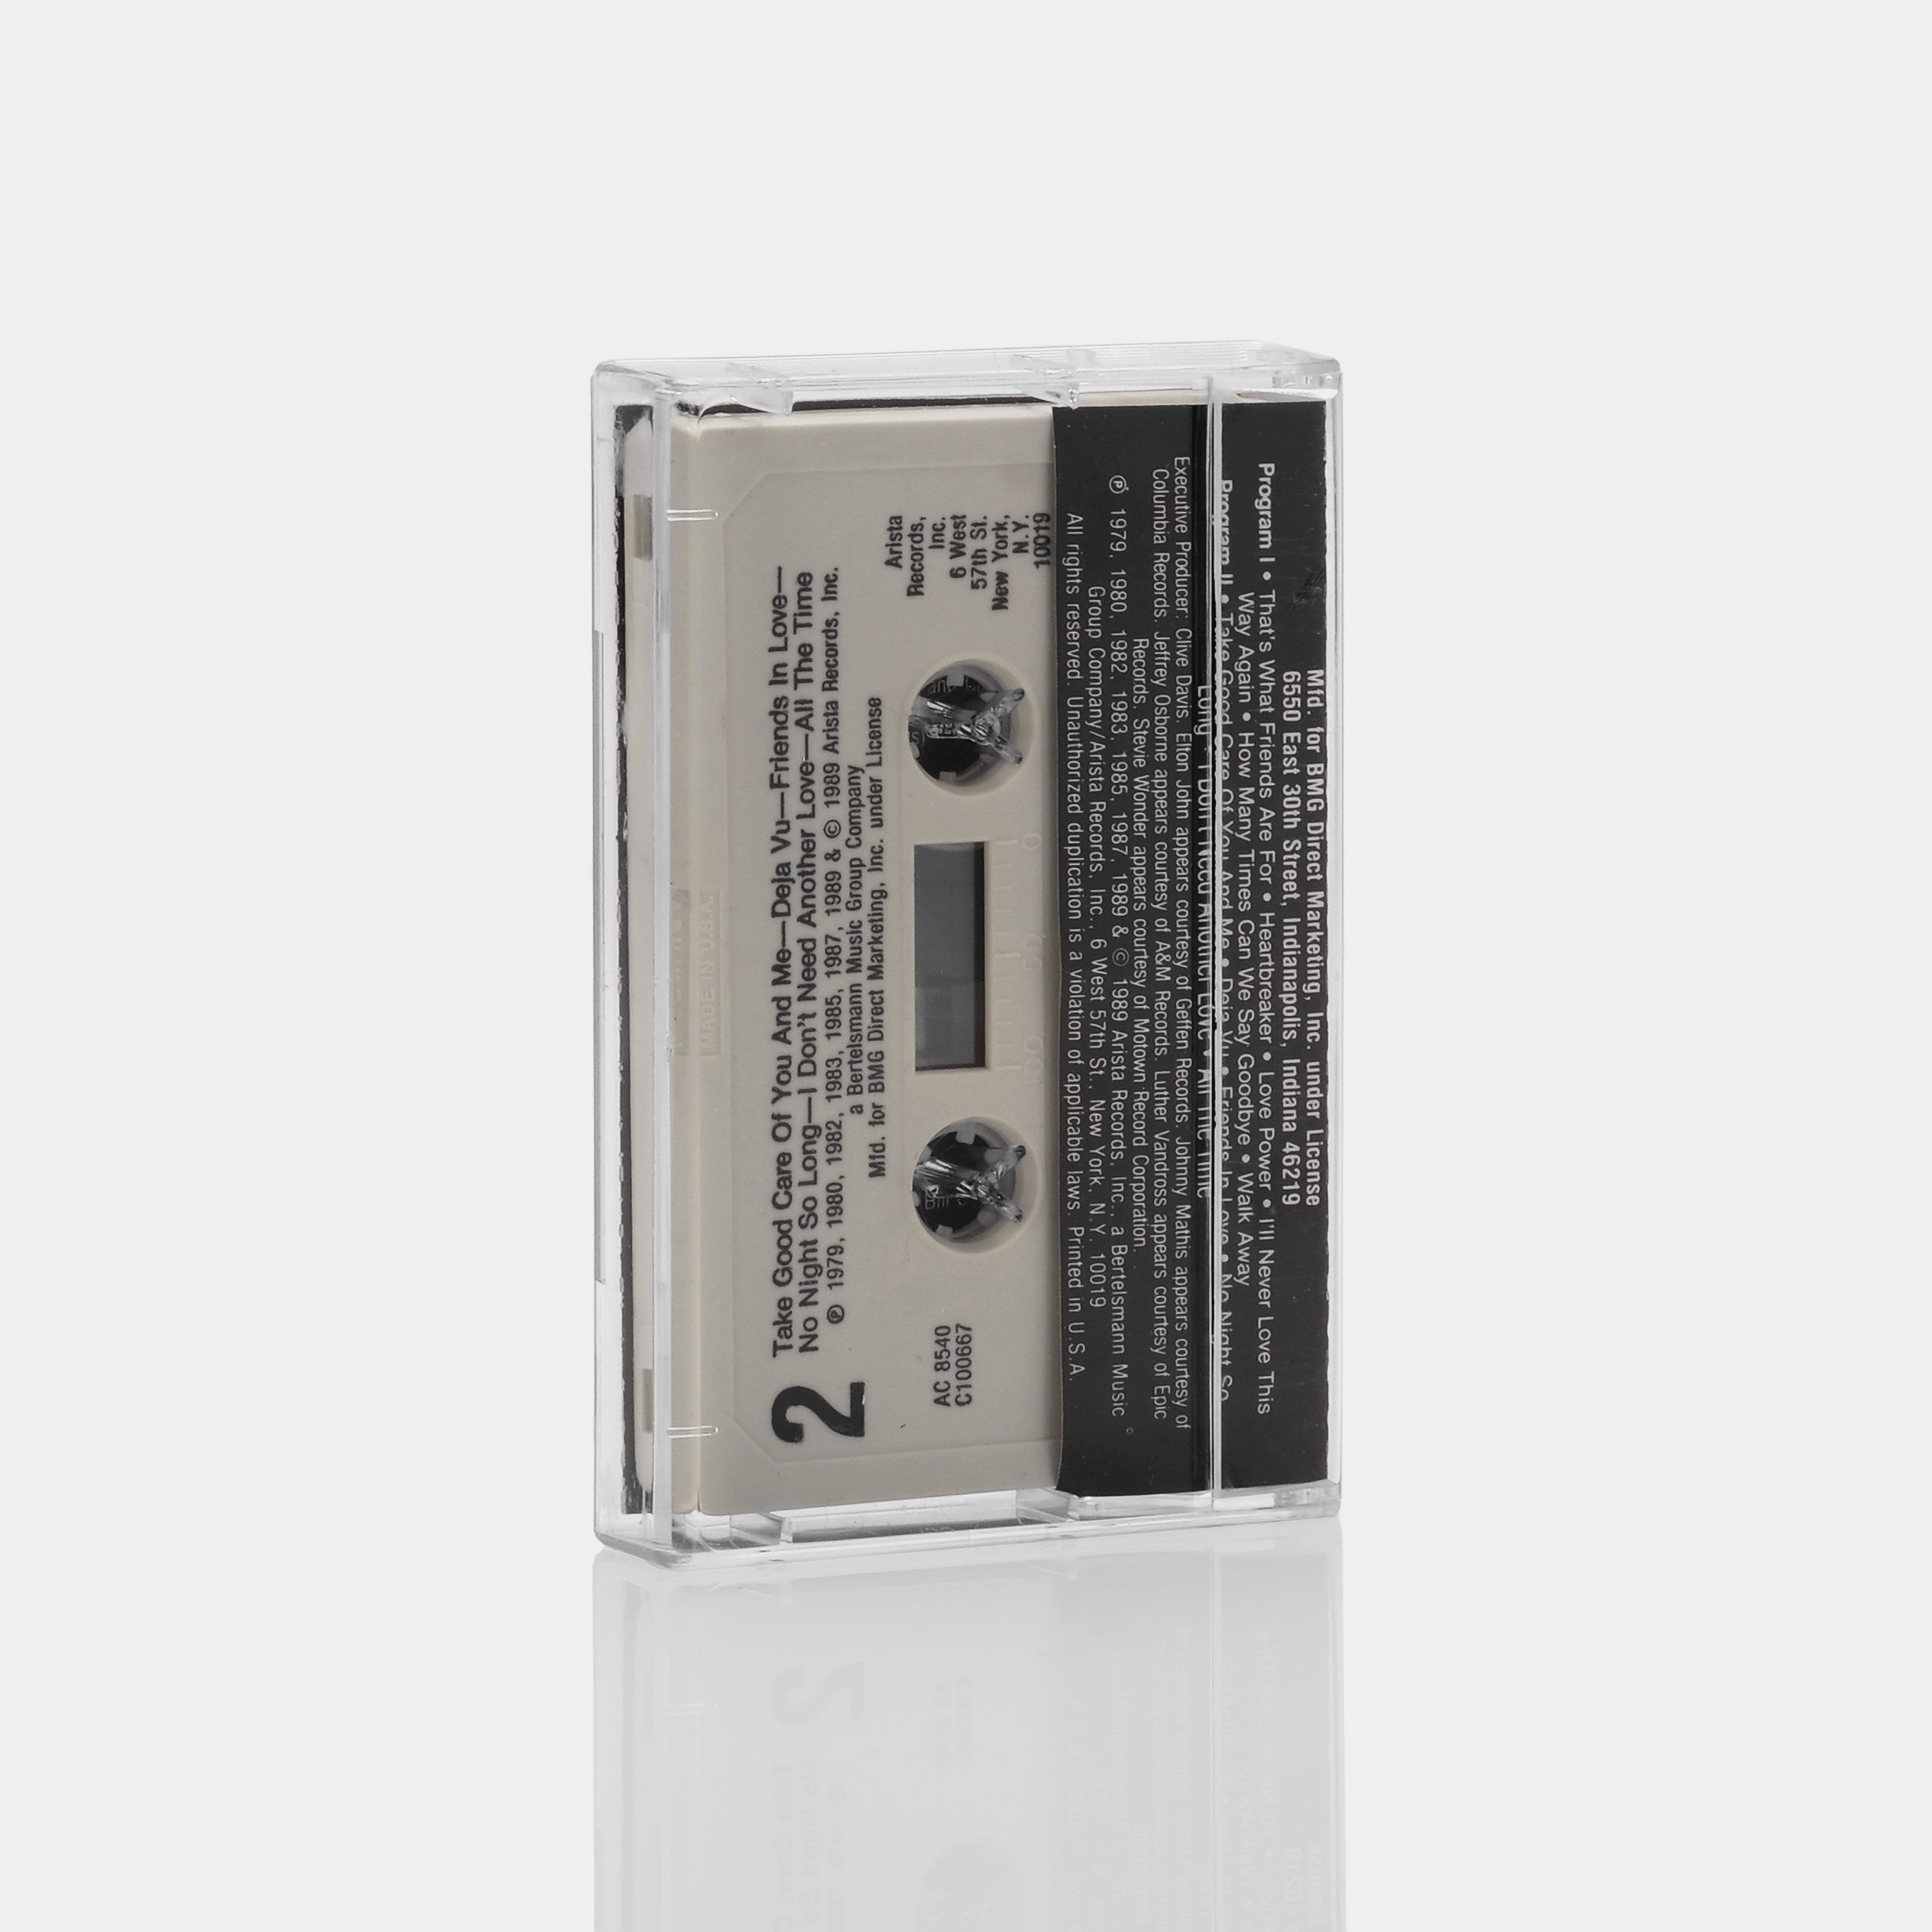 Dionne Warwick - Greatest Hits 1979-1990 Cassette Tape